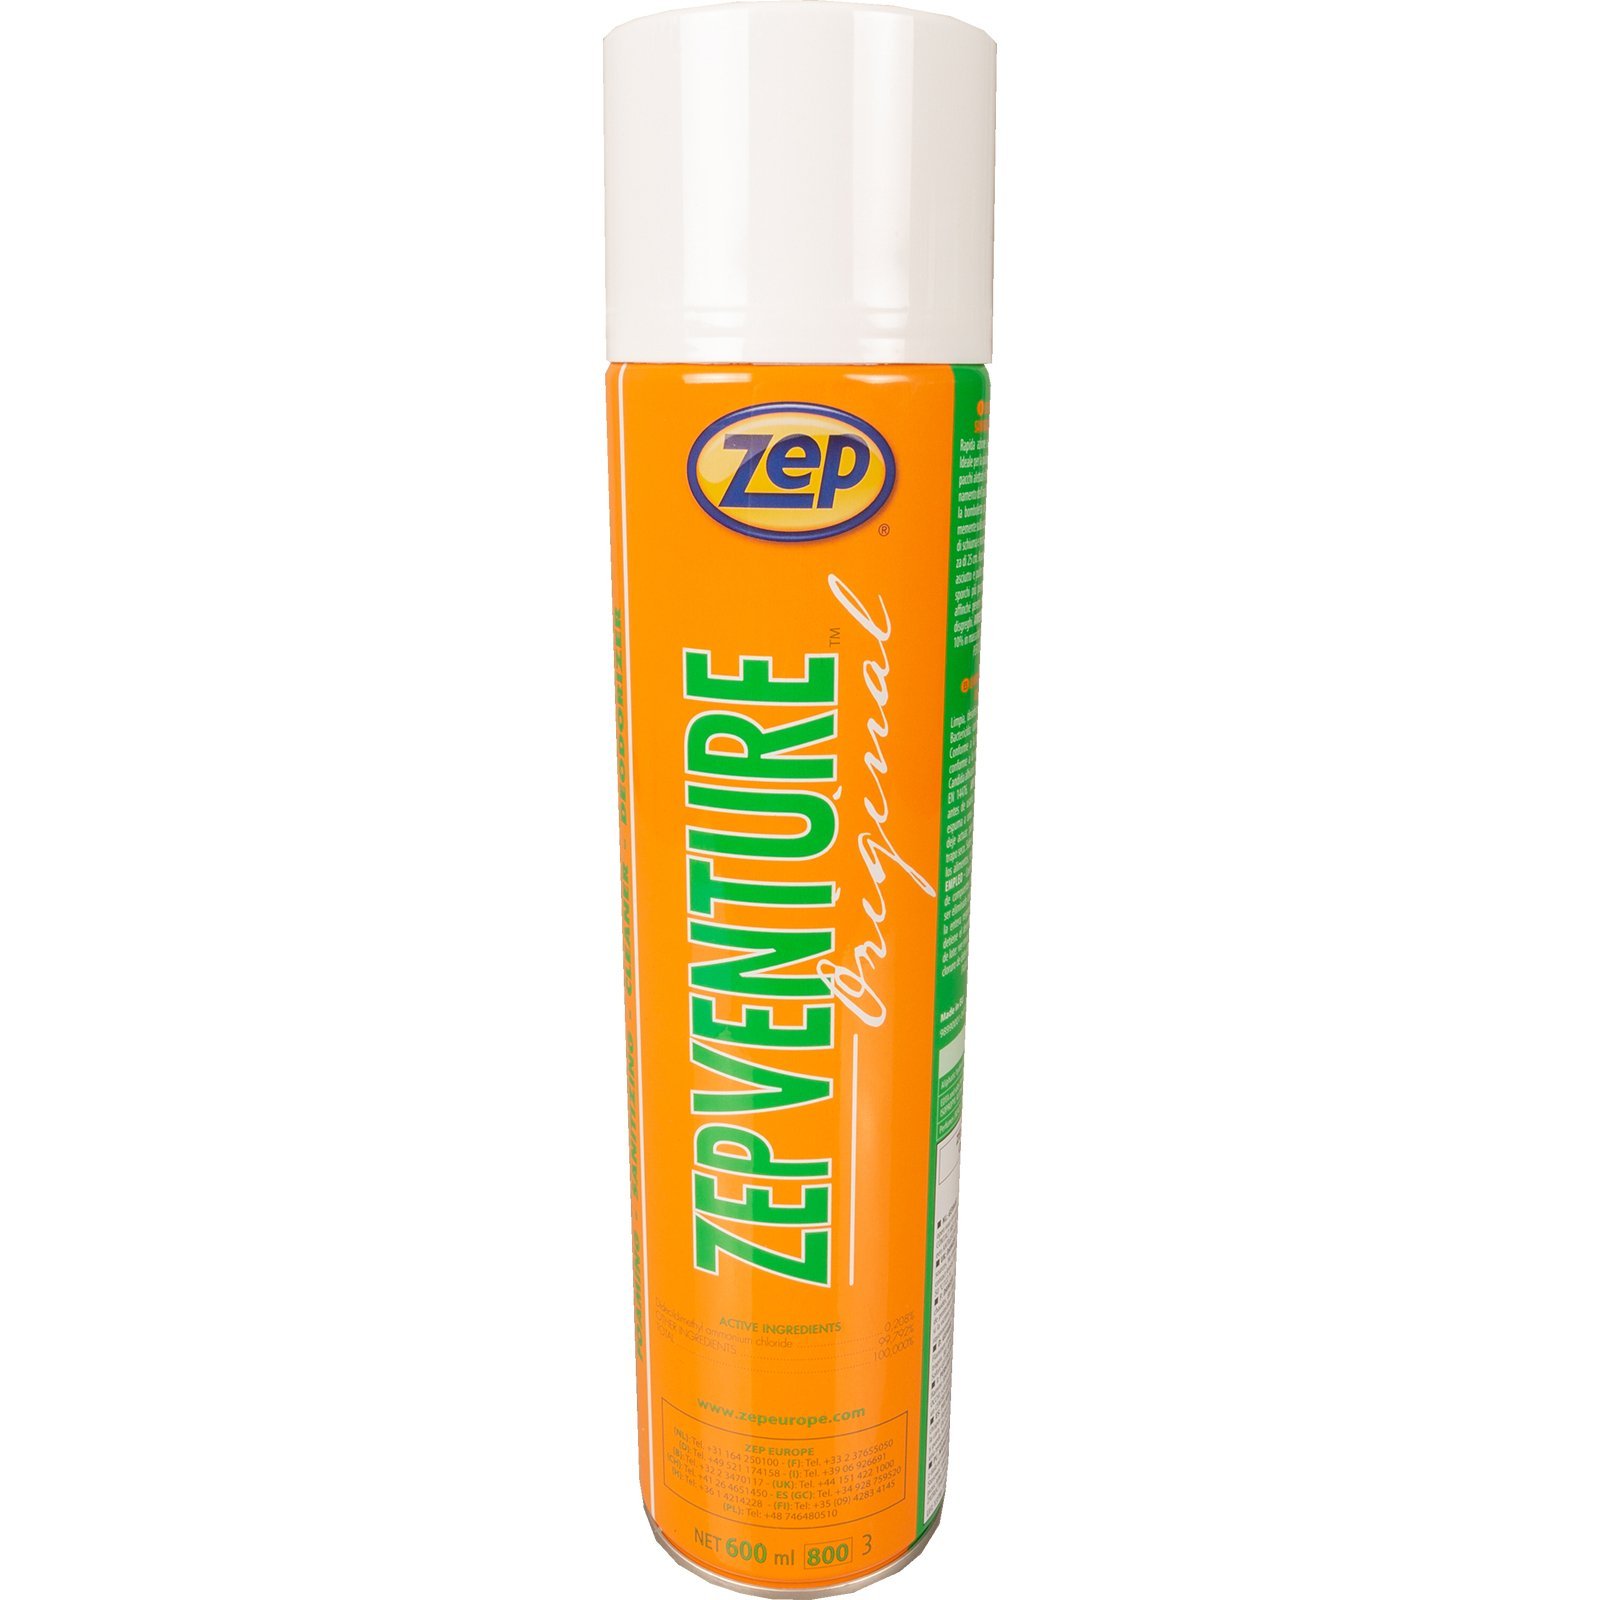 Desinfectie spray Zepventure 600 ml